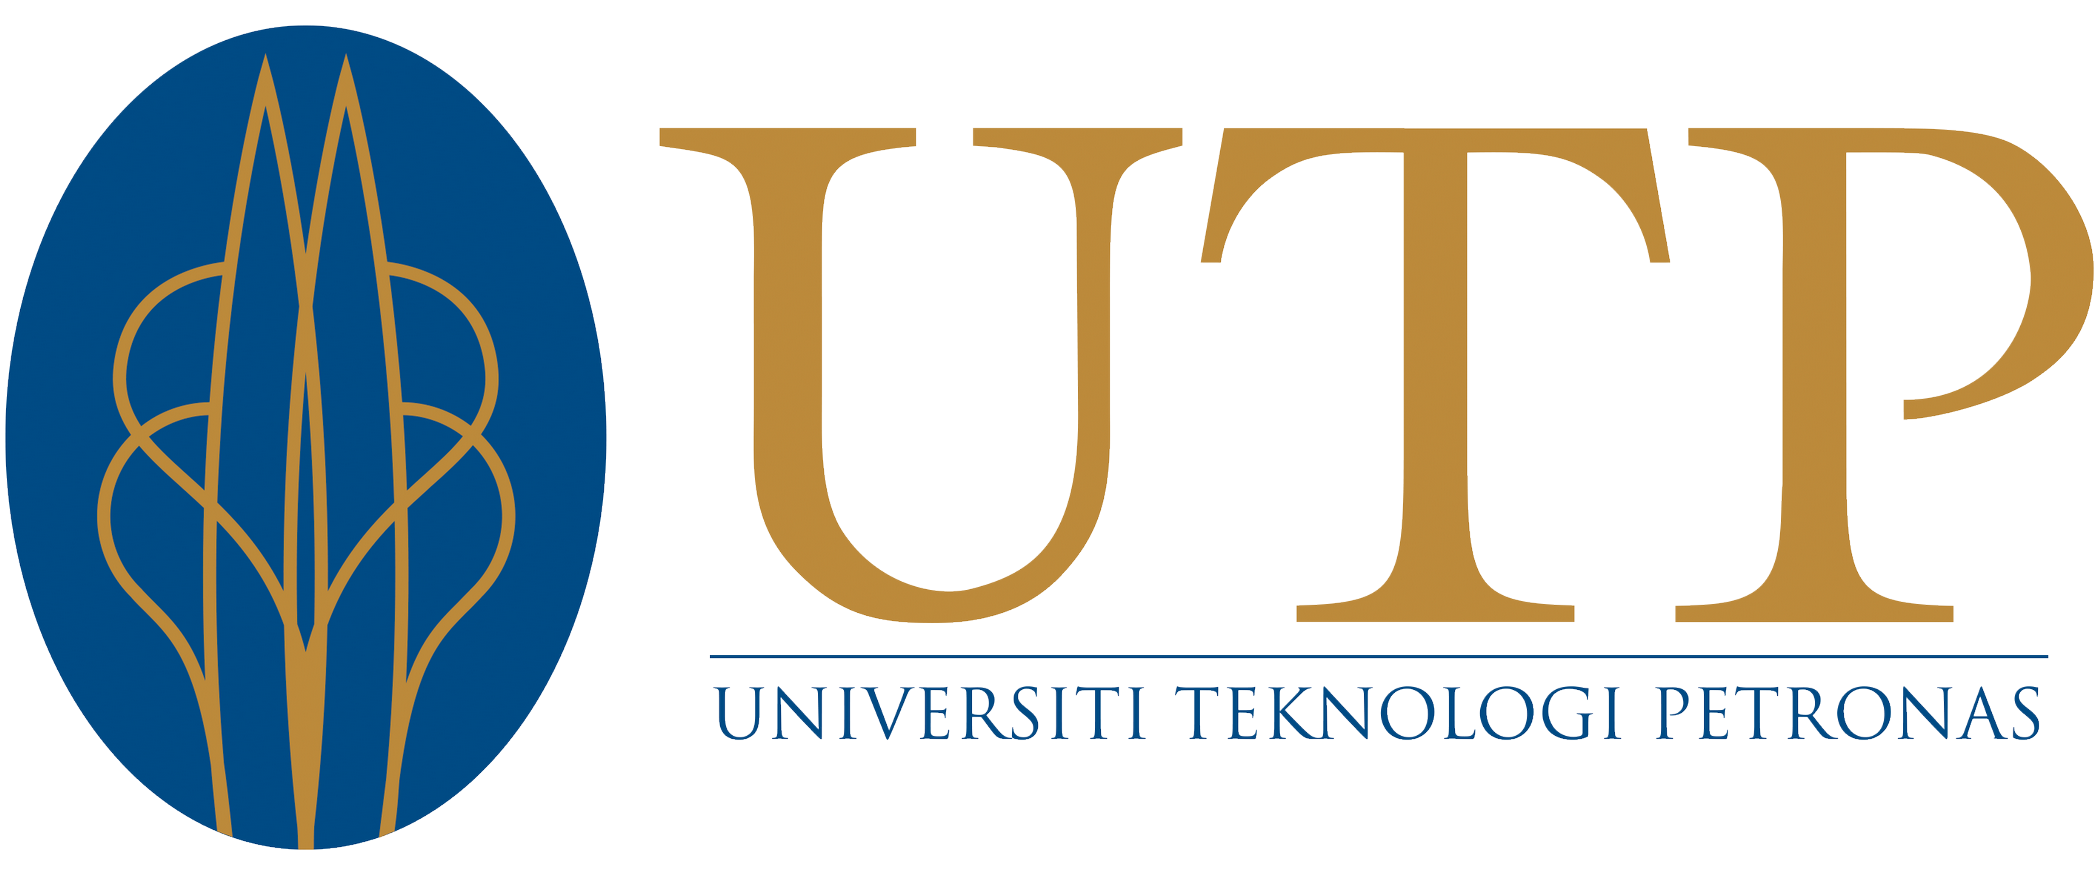 UTP-logo